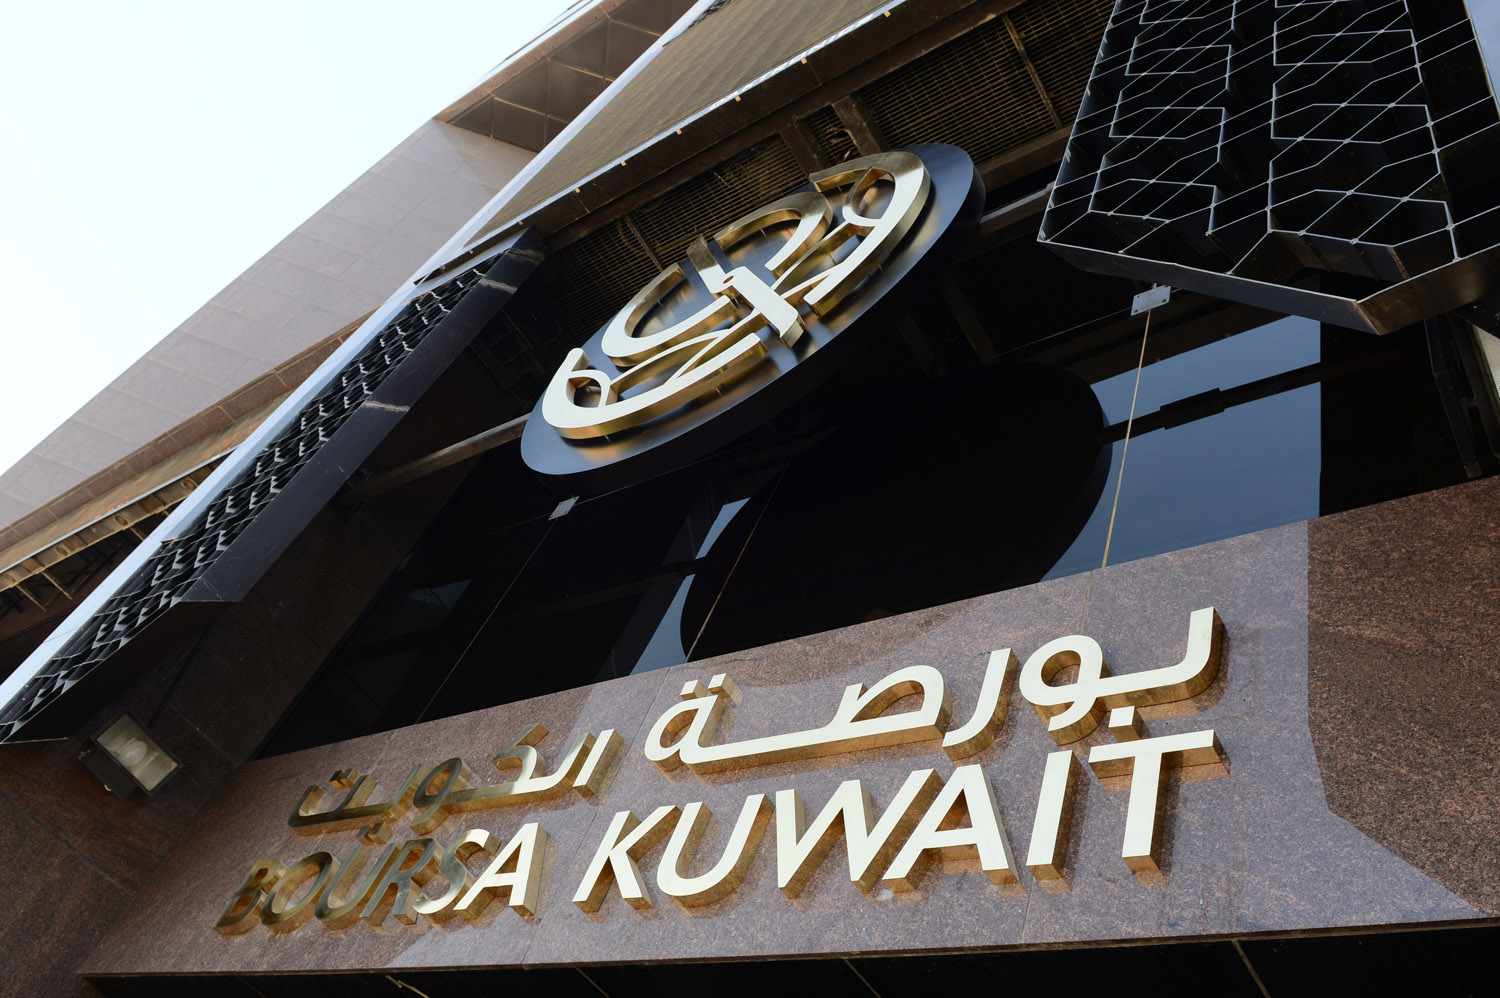 تراجع المؤشرات الرئيسية لبورصة الكويت عند الساعة 20ر9 صباحا بفعل تداعيات التوترات السياسية بين روسيا واوكرانيا                                                                                                                                            